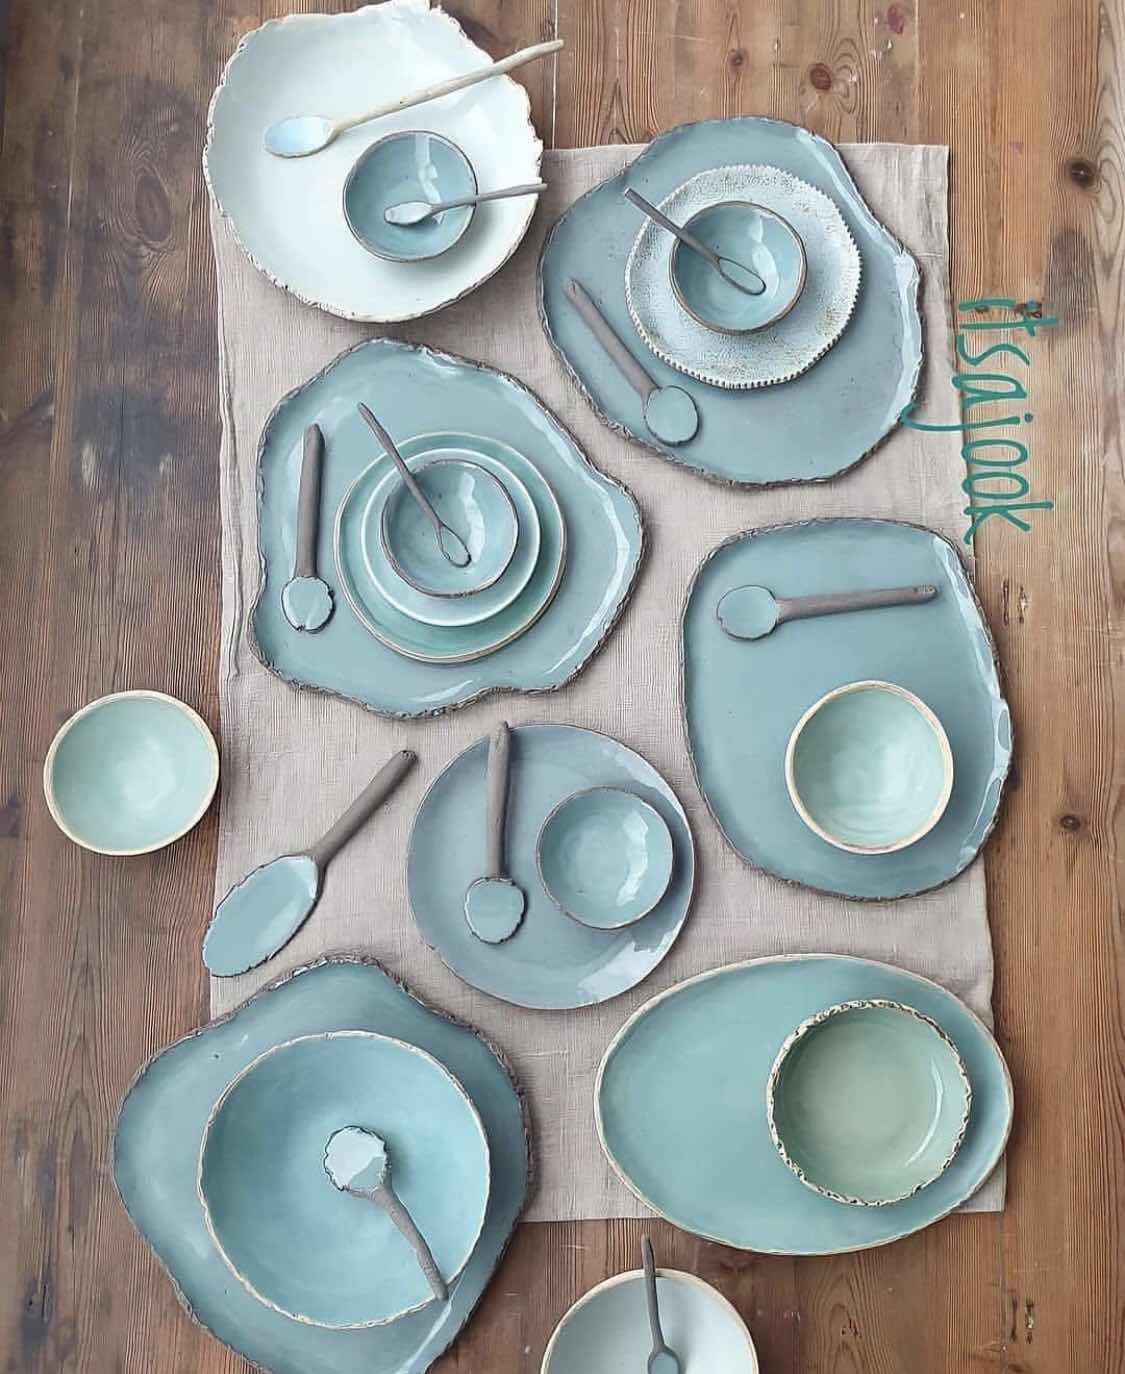 Handmade Ceramic Dinner Table Setup